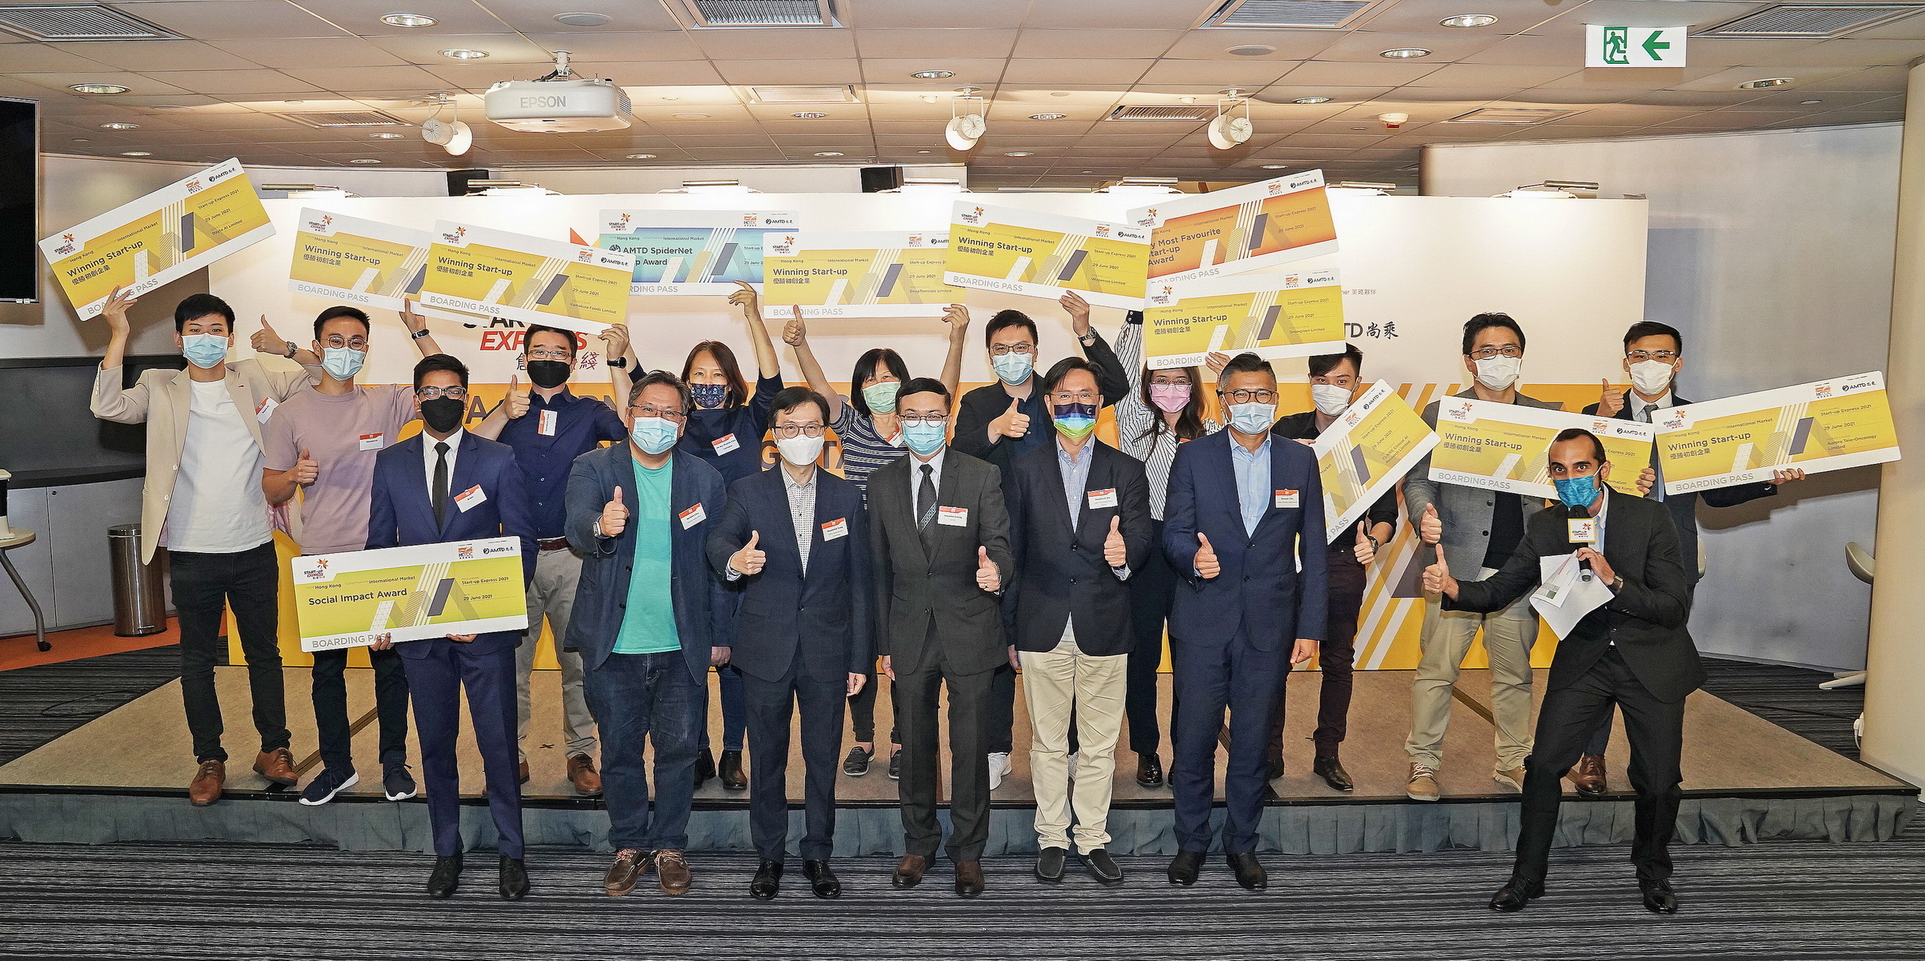 去年「創業快綫」決選選出10間優勝初創企業。（香港貿發局提供圖片）